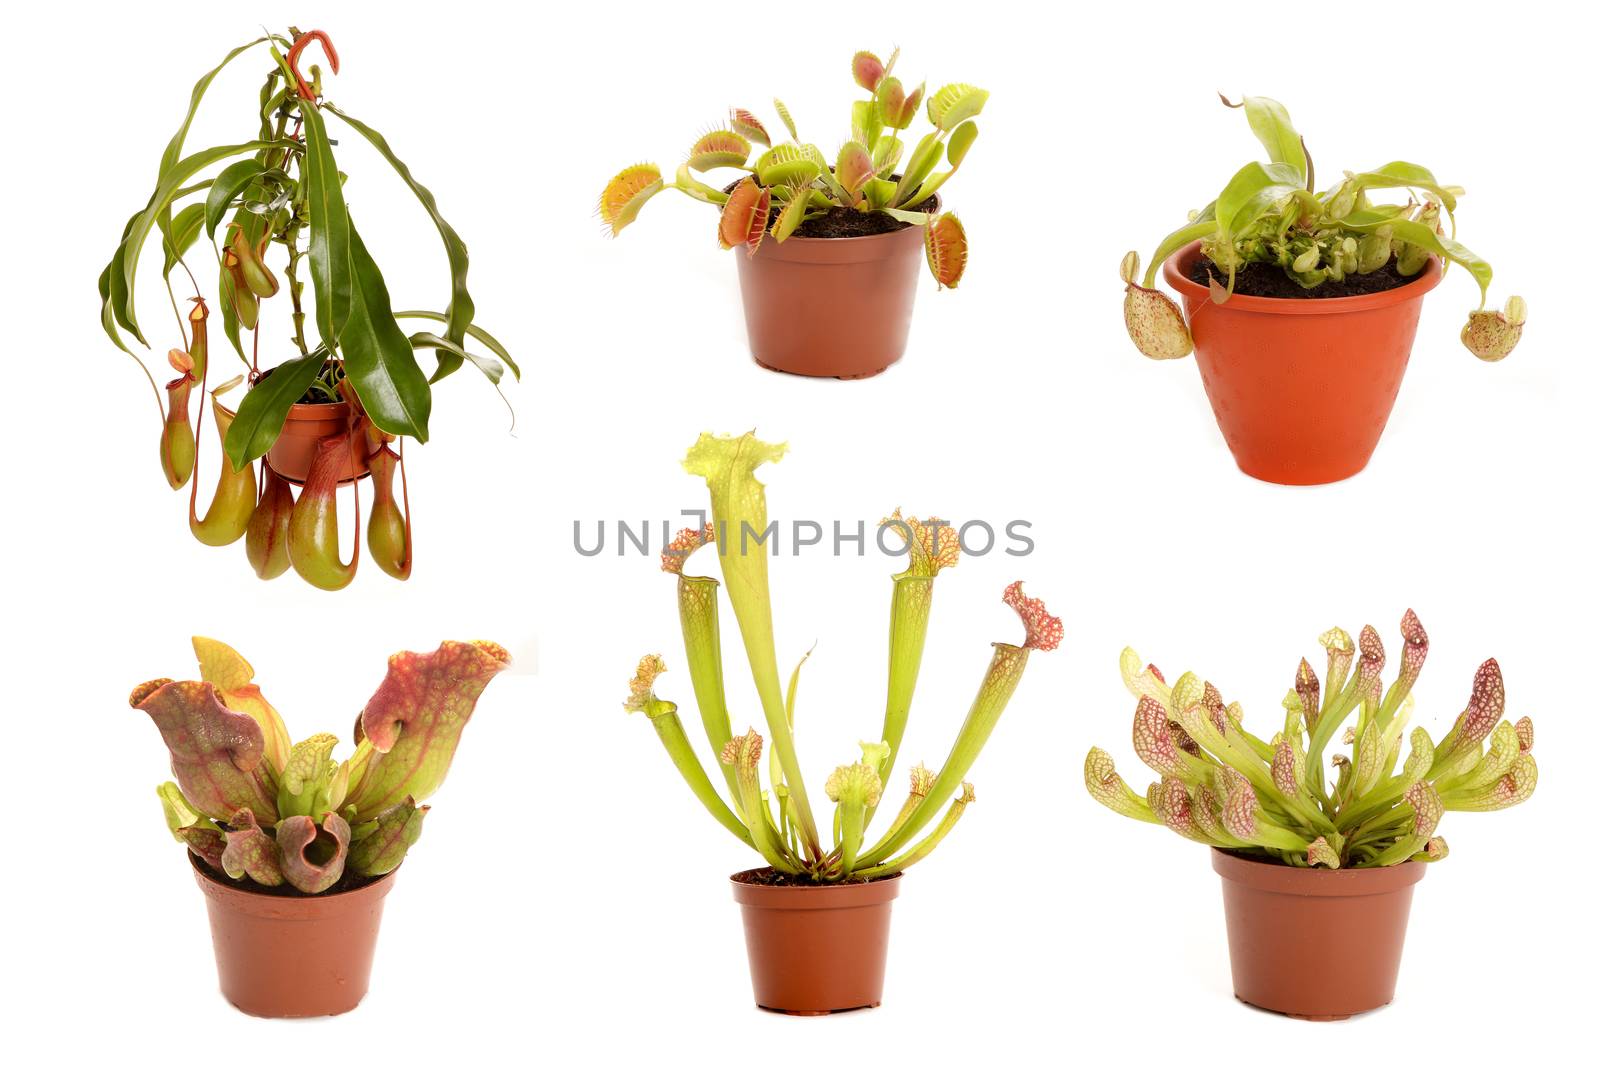 Varieties of predatory plants in flower pots by sveter